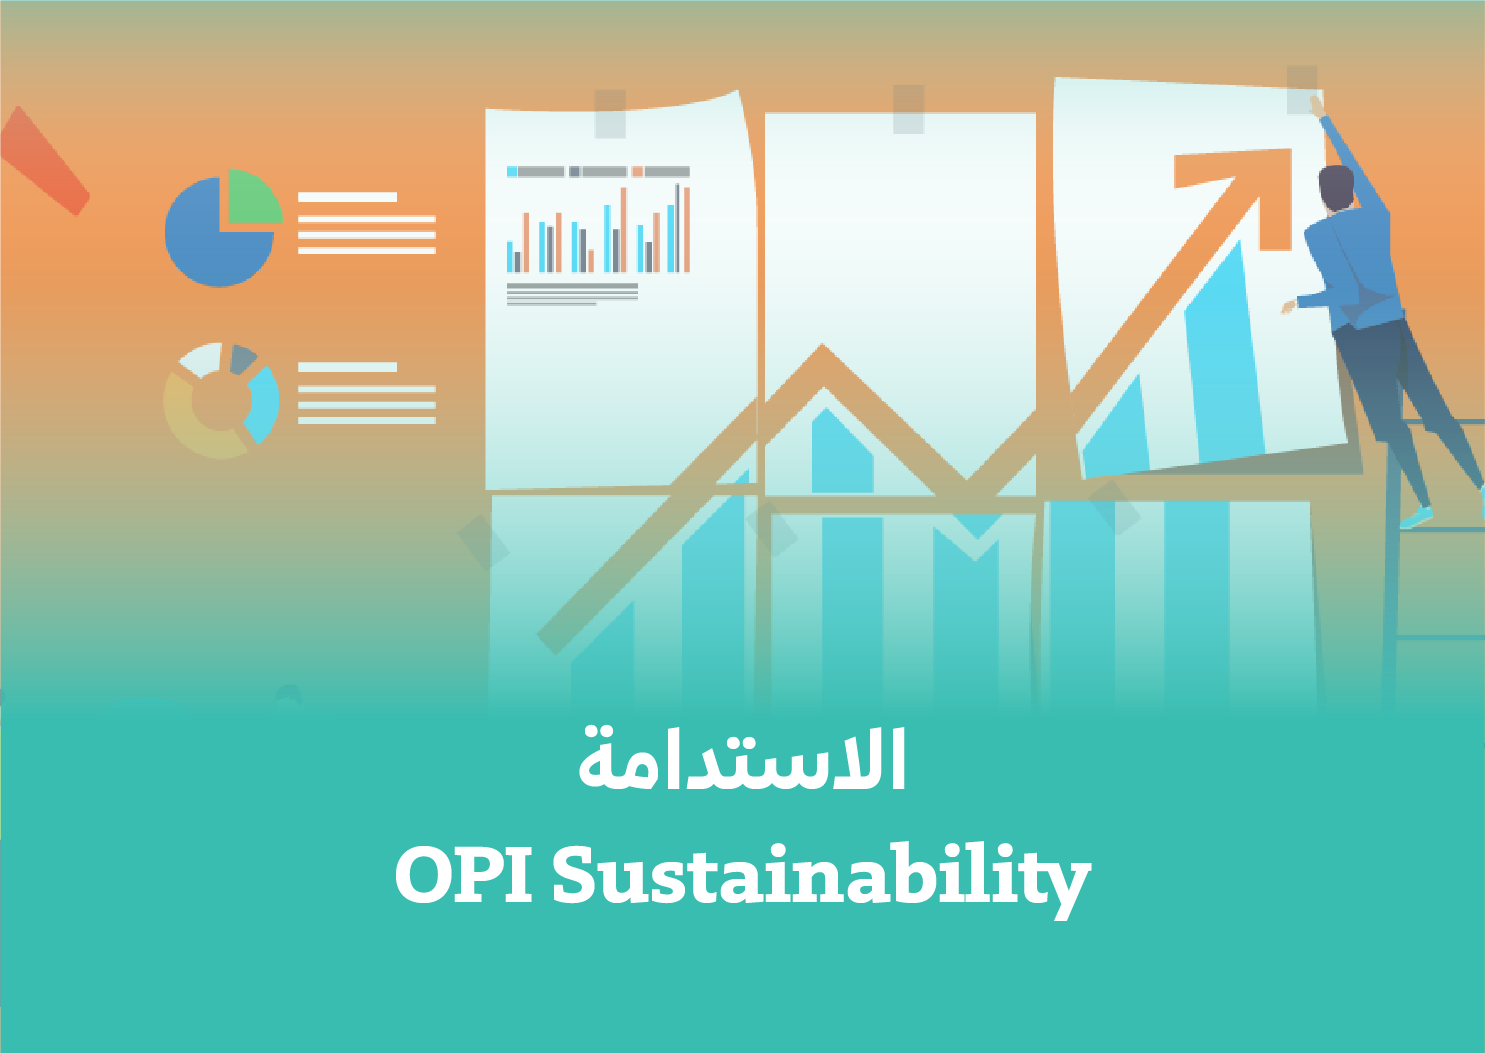 OPI Sustainability